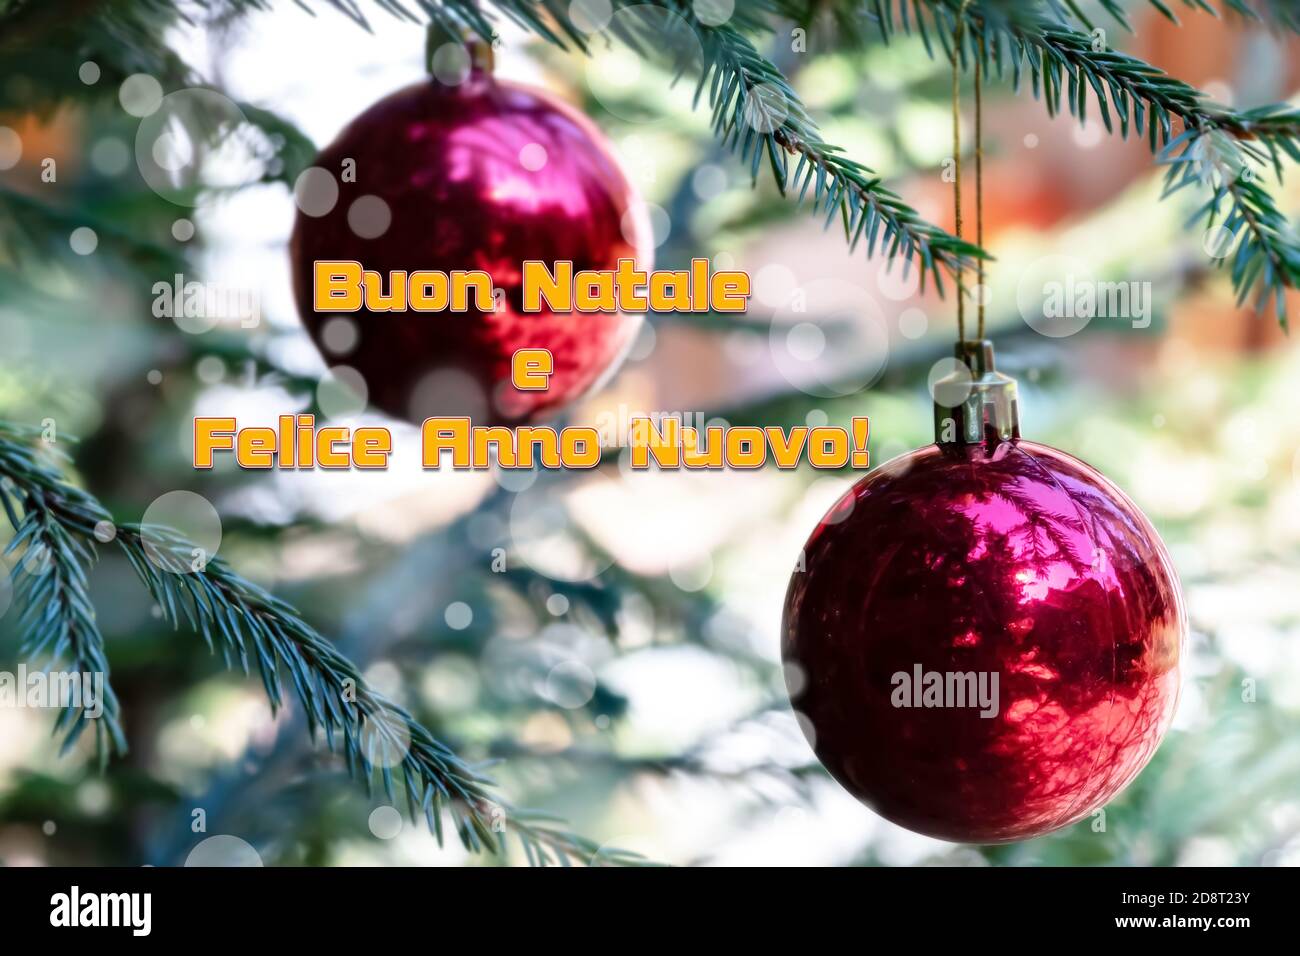 Vœux de Noël en italien signifie Joyeux Noël et heureux Nouveau Année sur boules rouges floues avec réflexion décorer le vert Branches du Christ Banque D'Images